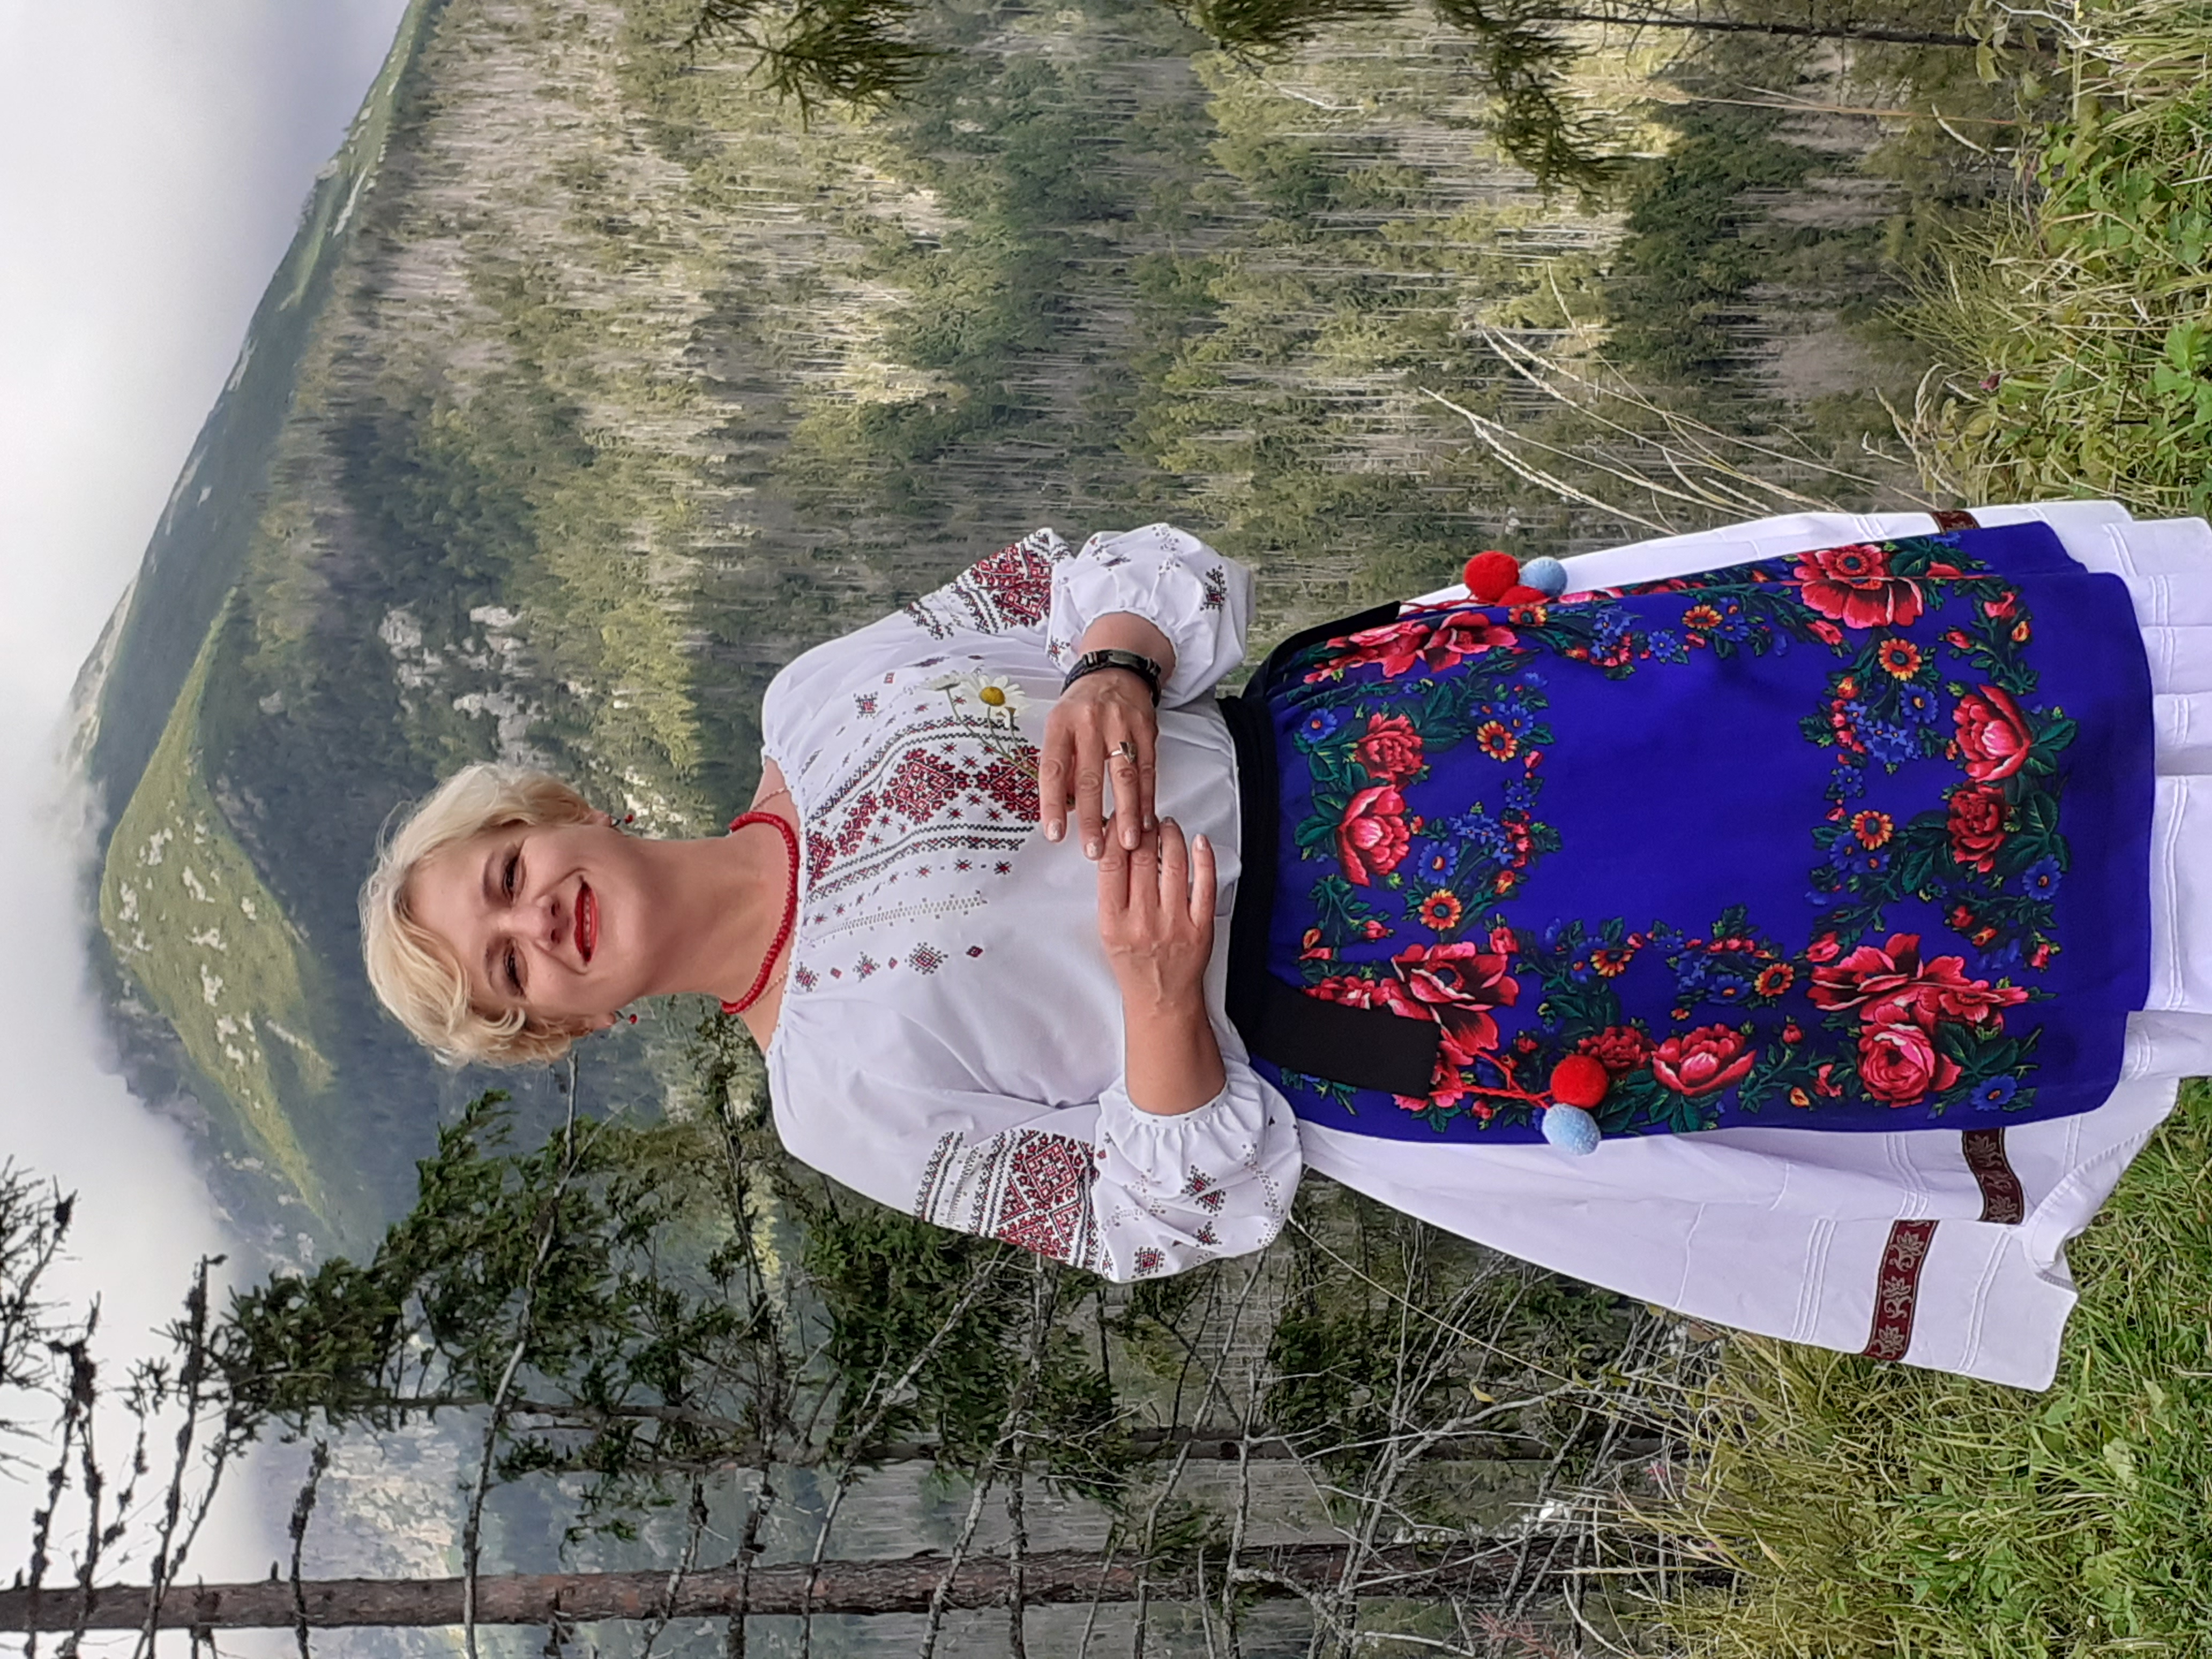 Директорка Ужгородського районного будинку культури Леся Дубенко під час поїздки в Чехію